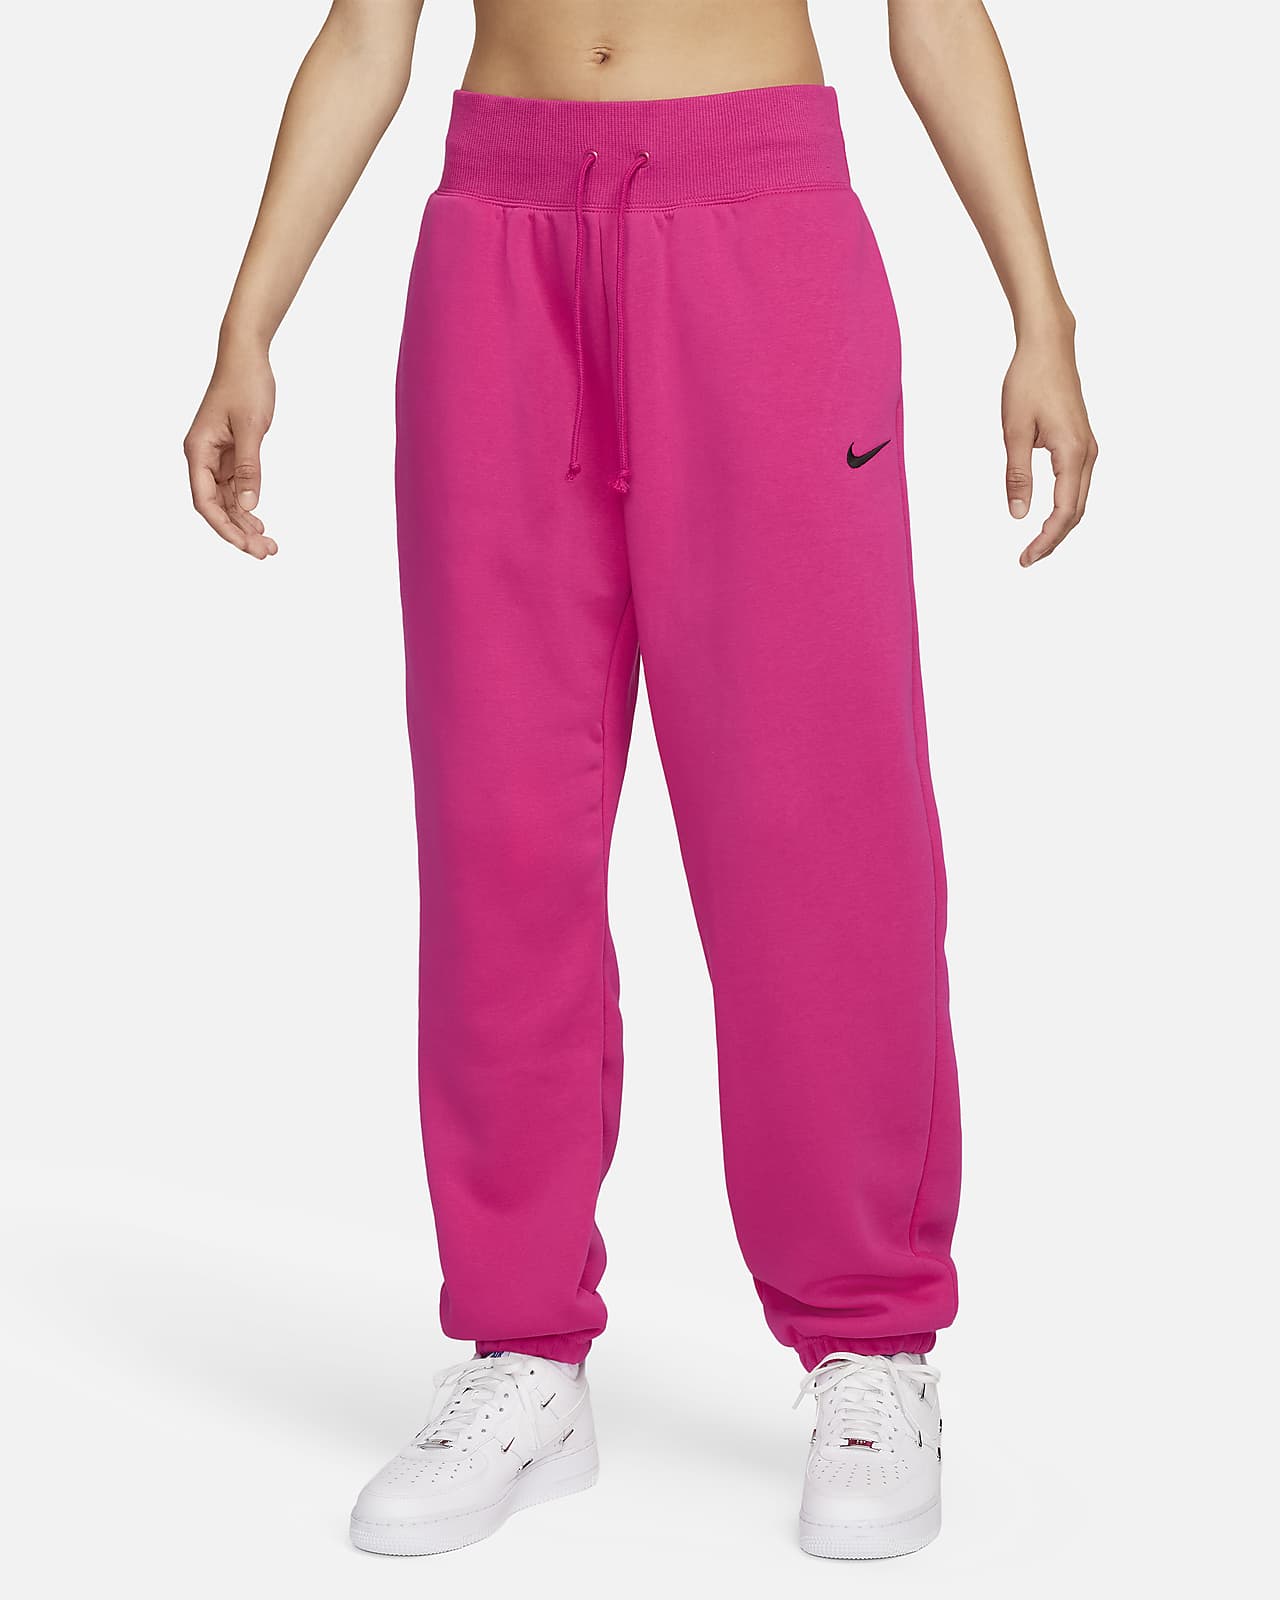 Nike Sportswear Phoenix Fleece Women's High-Waisted Joggers XL Pink  Sweatpants